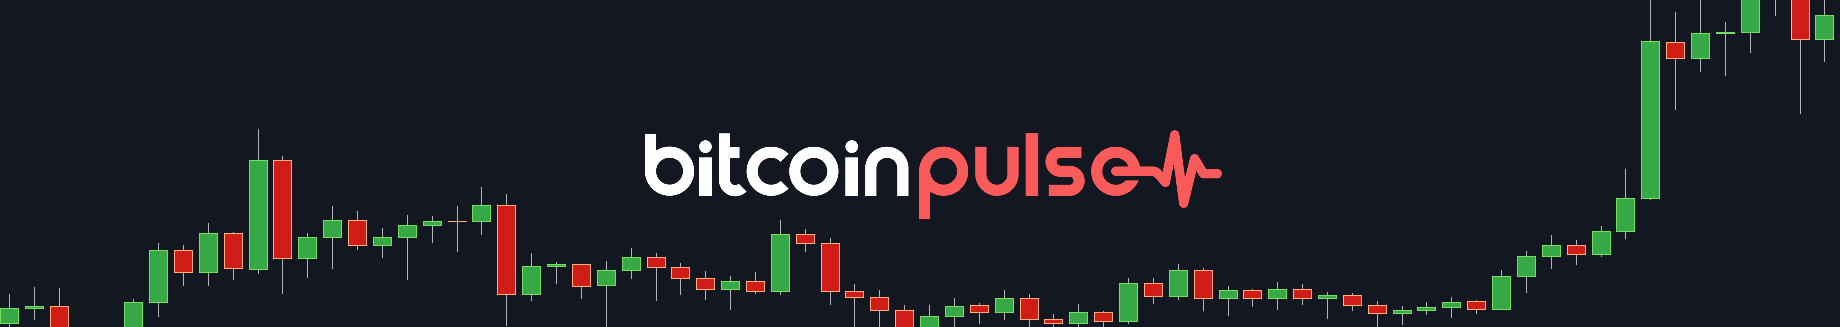 Bitcoin Pulse #123